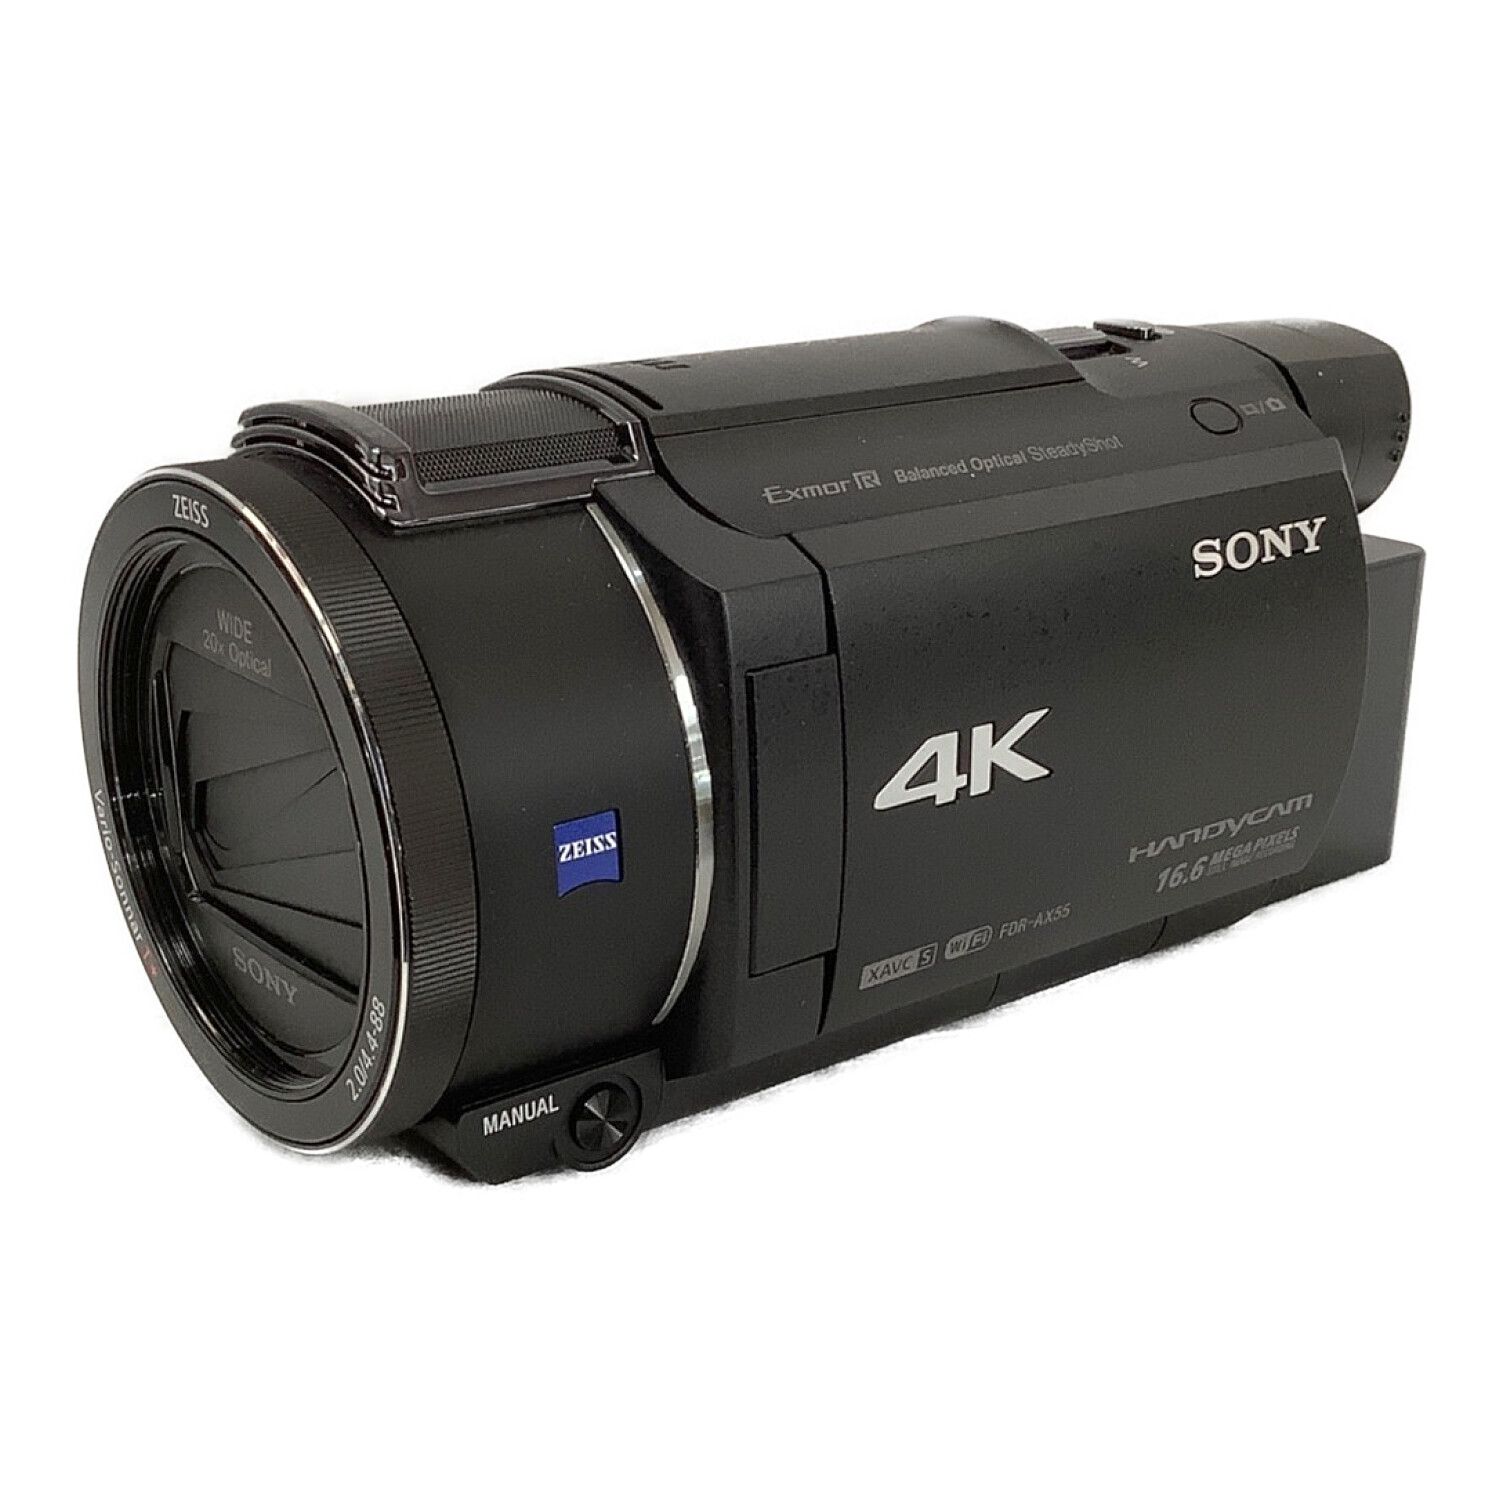 SONY (ソニー) デジタル4Kビデオカメラ 撮影時間150 分 829万画素 SD ...